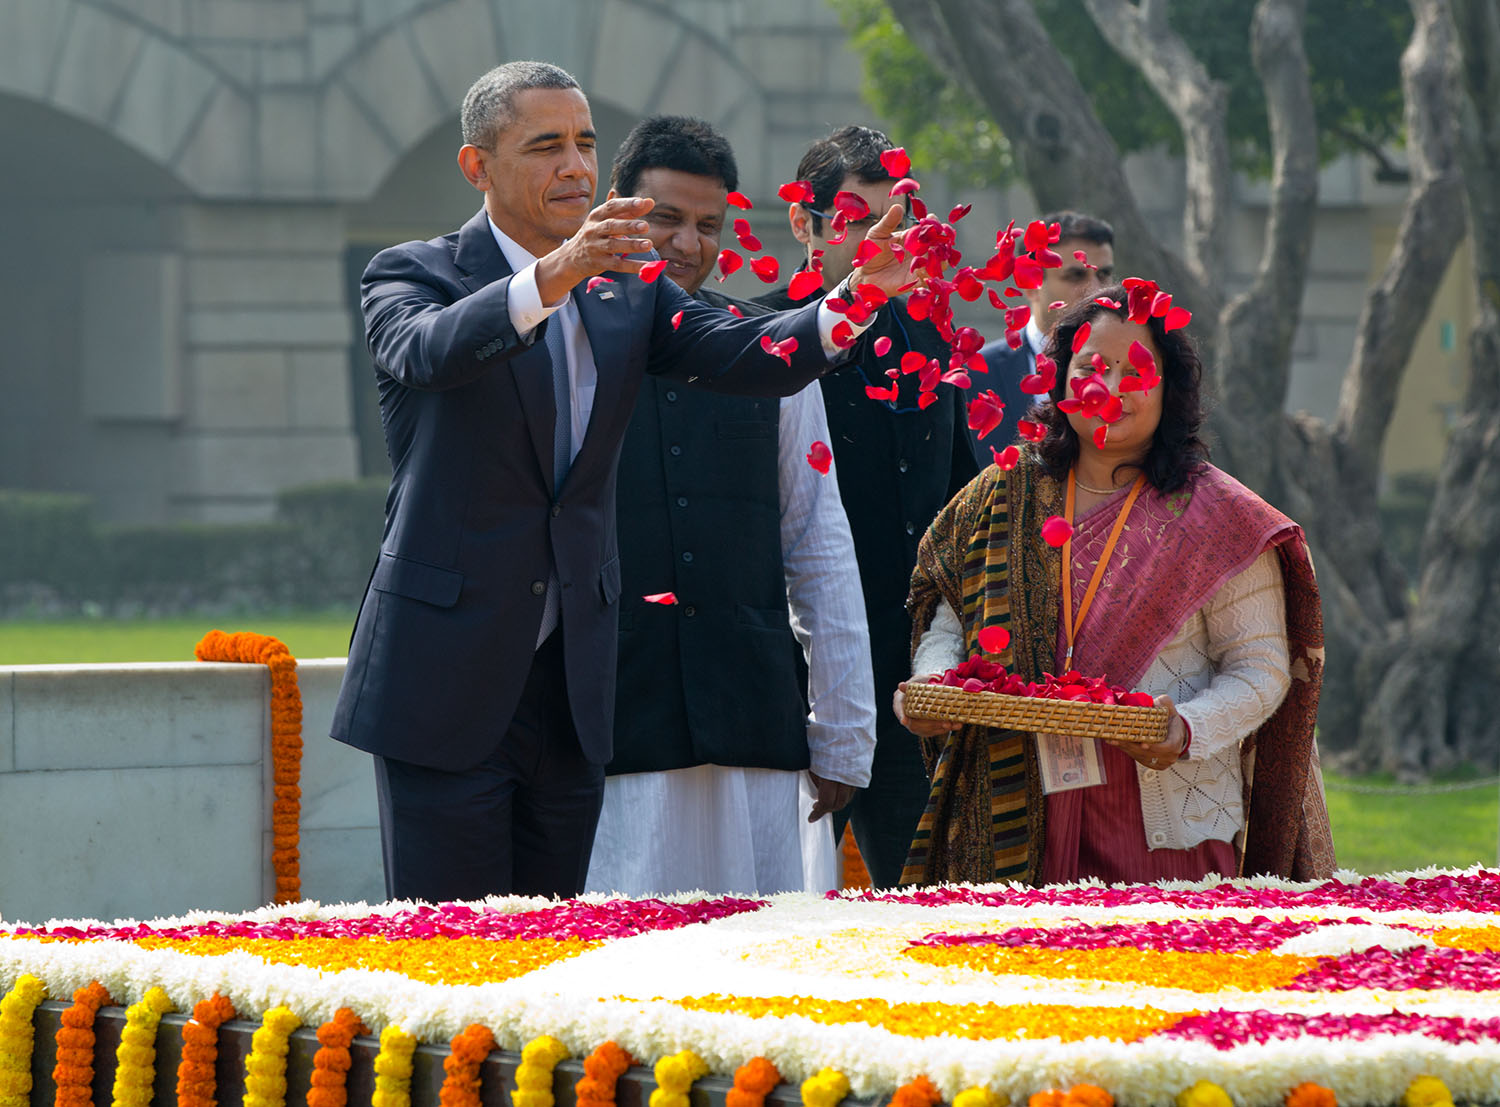 President Obama Drops Petals at Gandhi Memorial